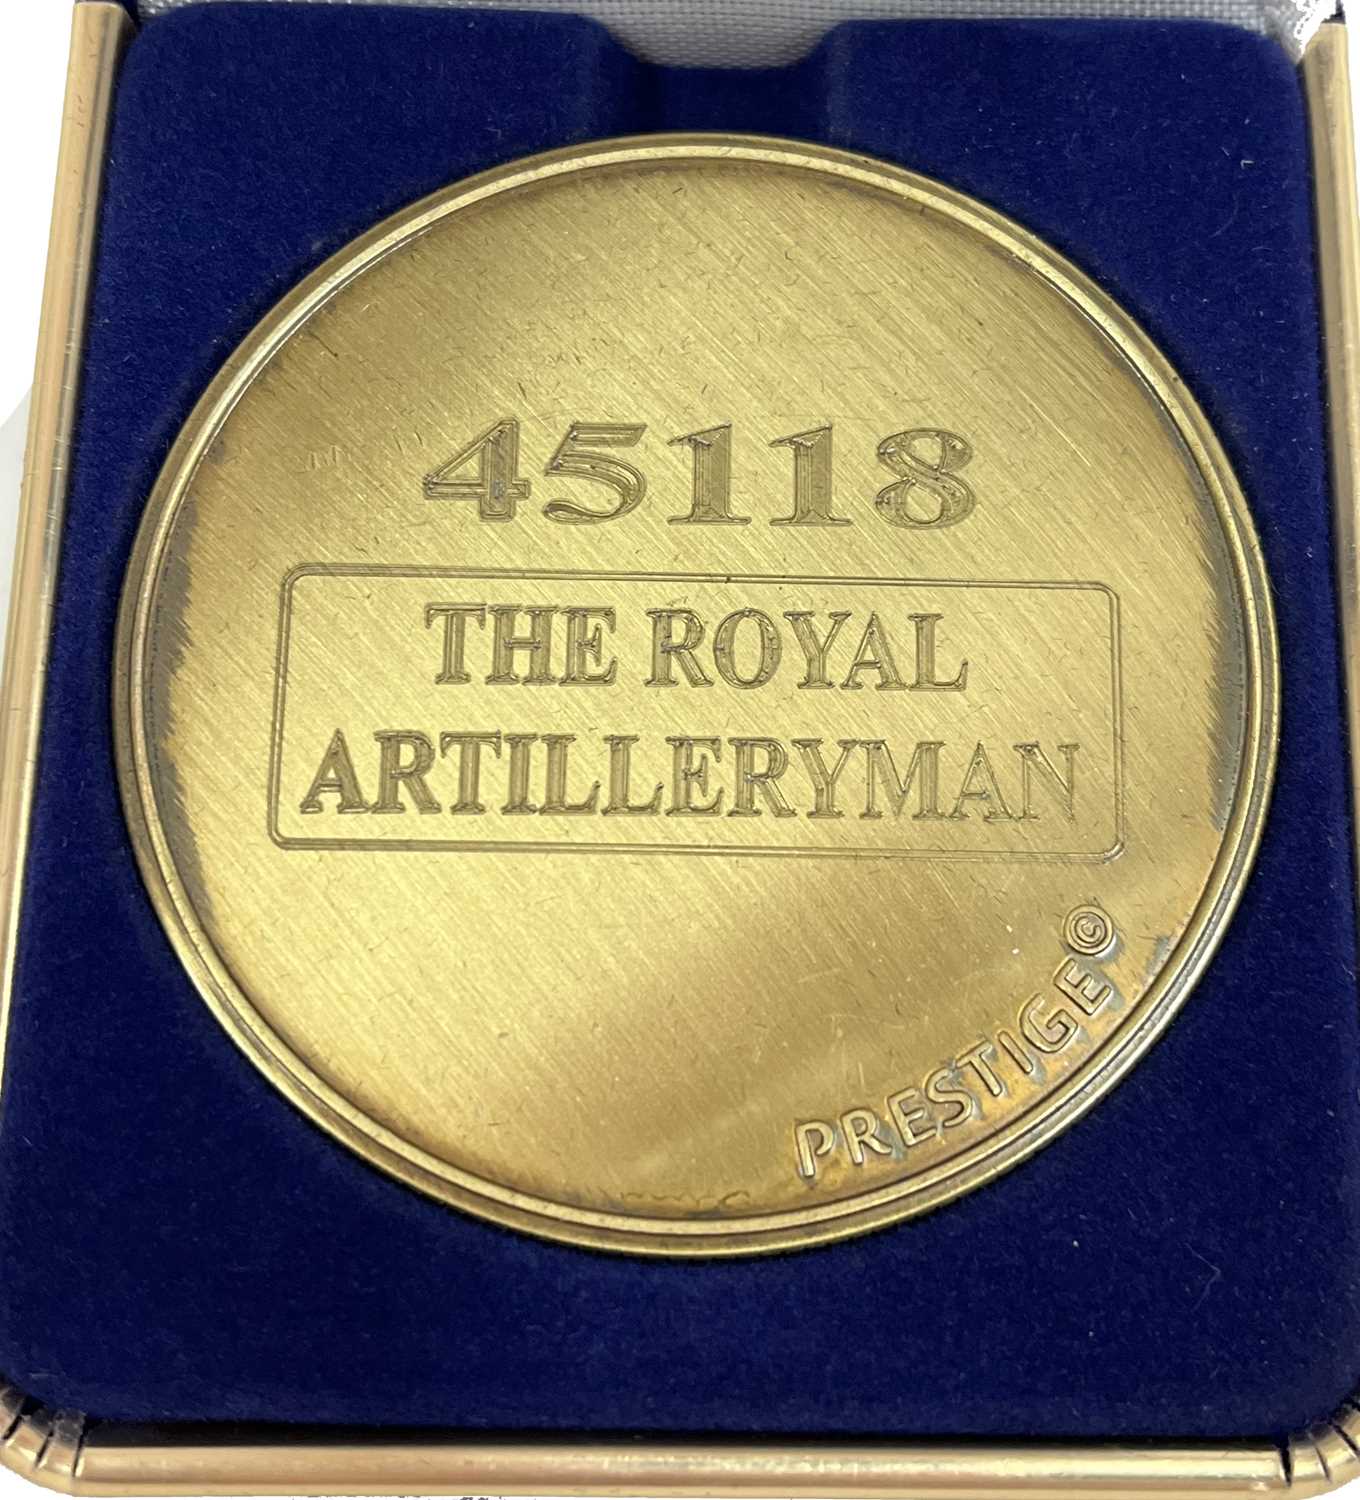 A commemorative gold award medallion to 45118 The Royal Artillery